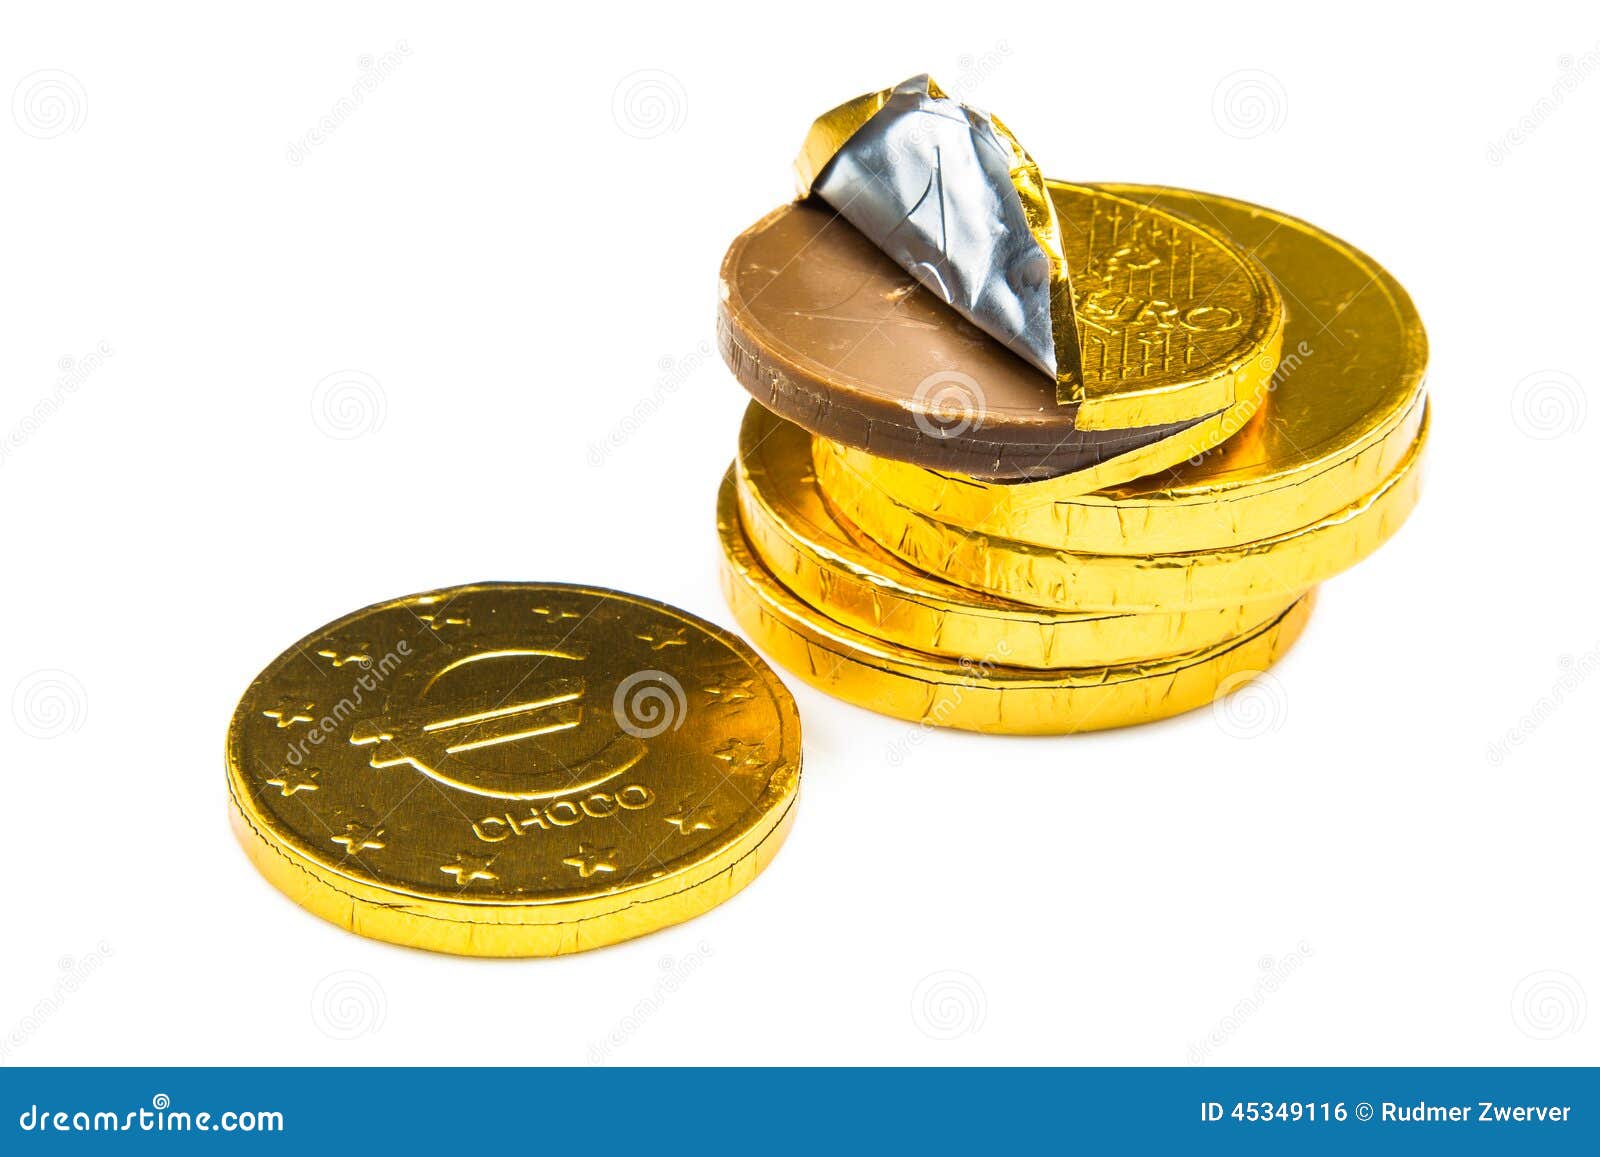 Pila De Monedas Chocolate Envuelto En Estaño Oro Brillante Fotos, retratos,  imágenes y fotografía de archivo libres de derecho. Image 9082772